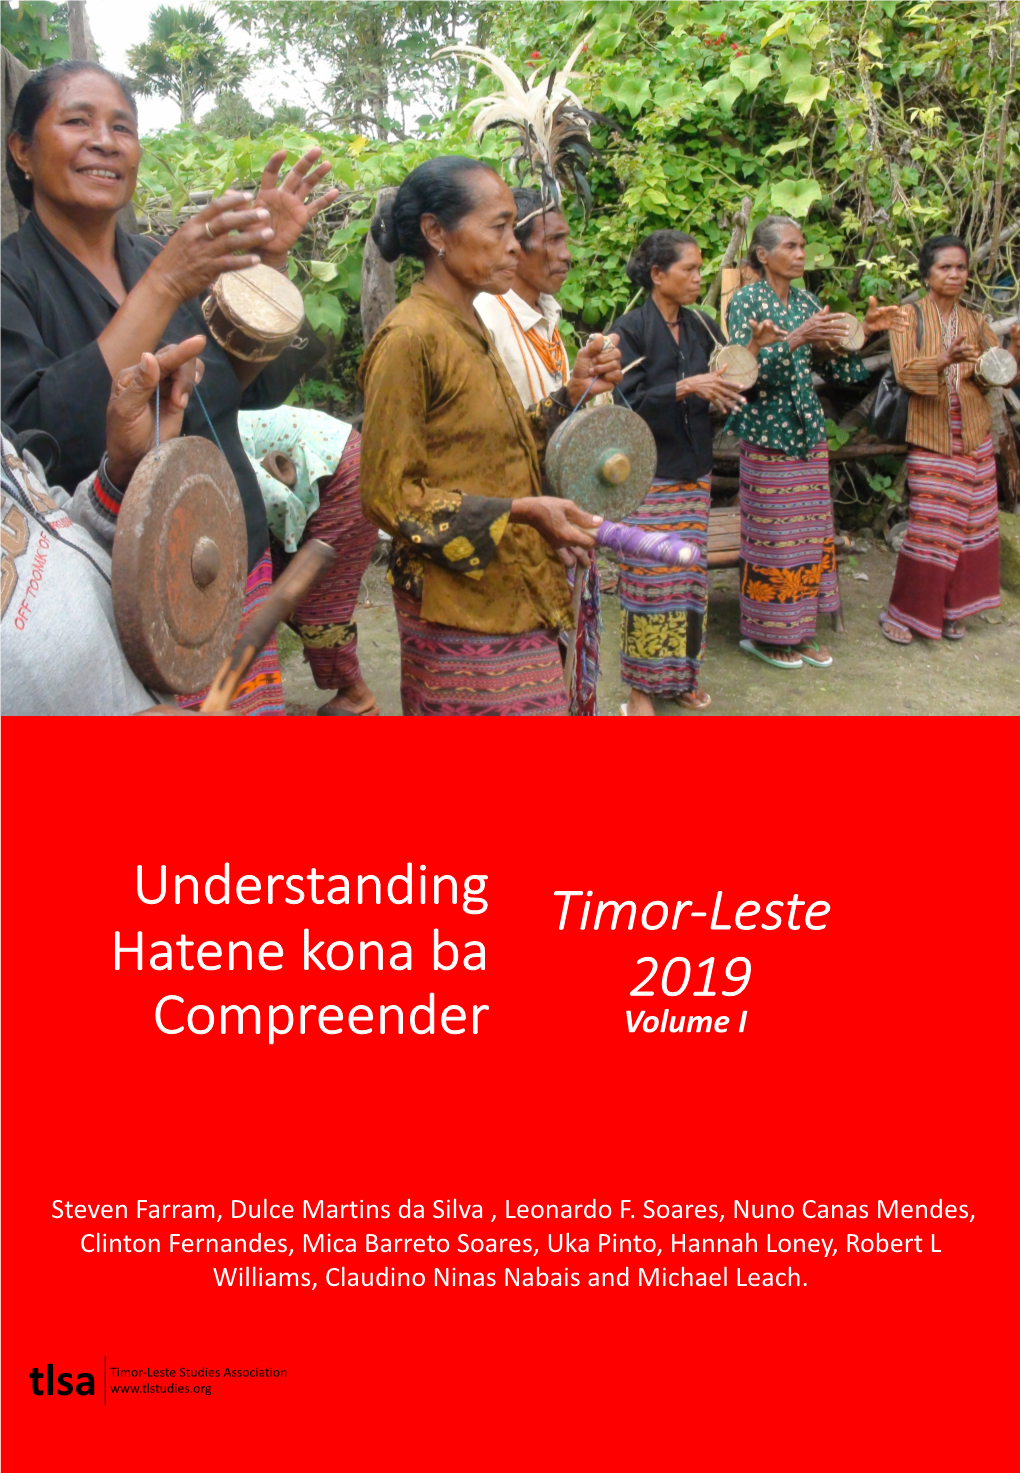 Understanding Hatene Kona Ba Compreender Timor-Leste 2019